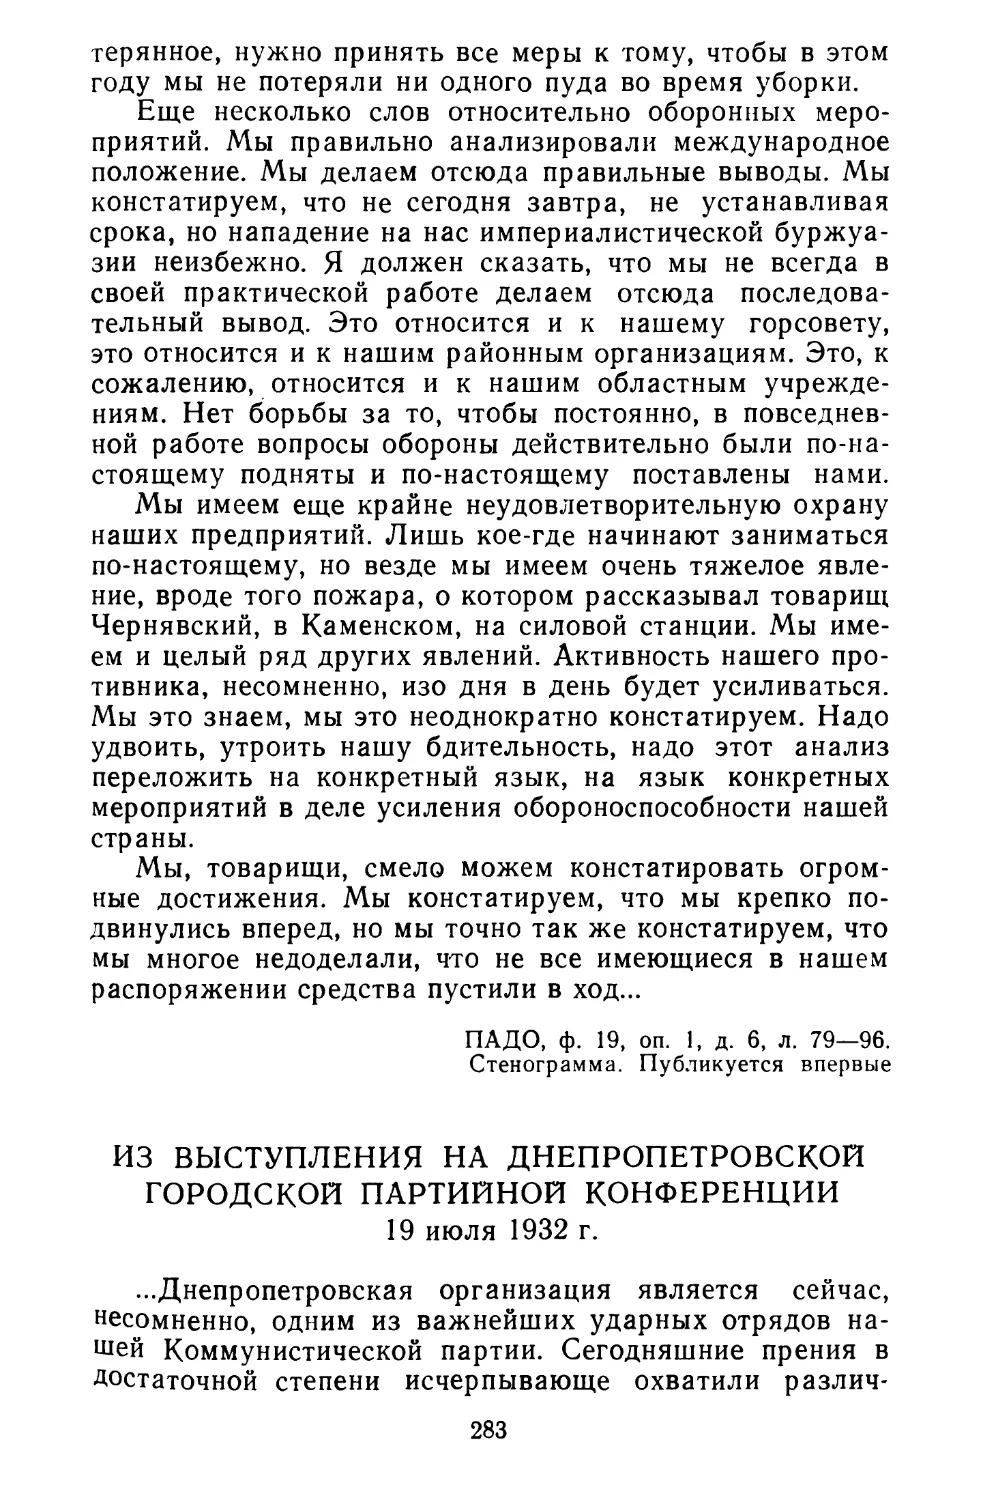 Из выступления на Днепропетровской городской партийной конференции. 19 июля 1932 г.